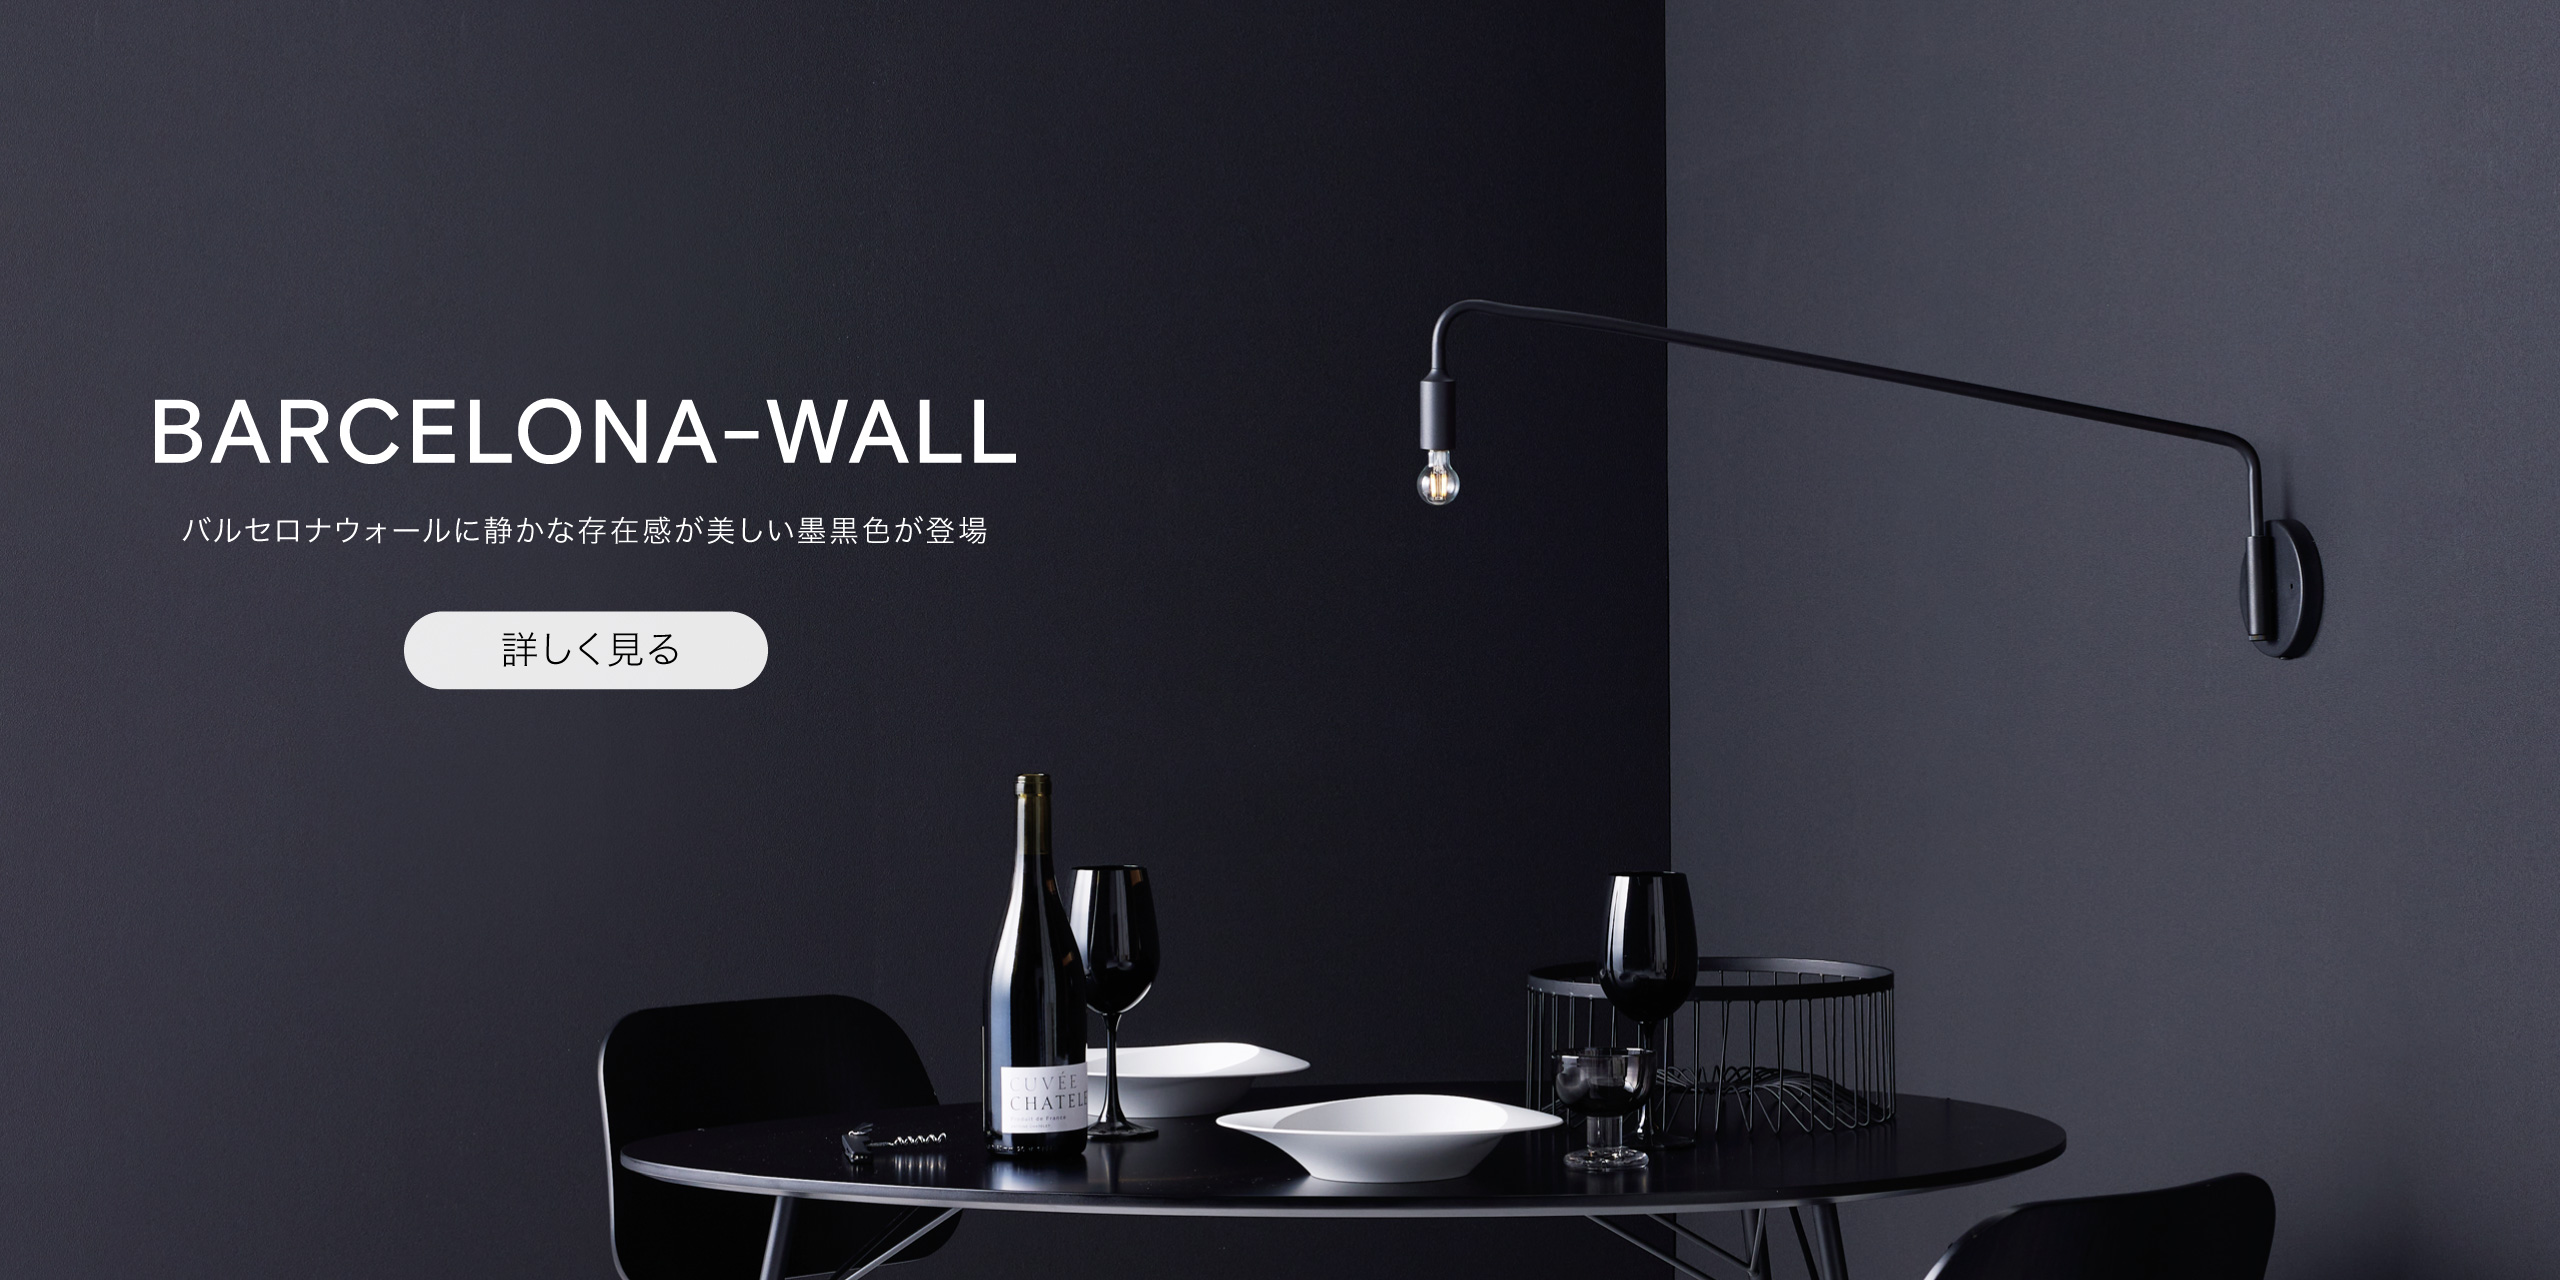 真鍮の素材感が美しい壁掛け照明・ブラケットライトのBARCELONA-WALL